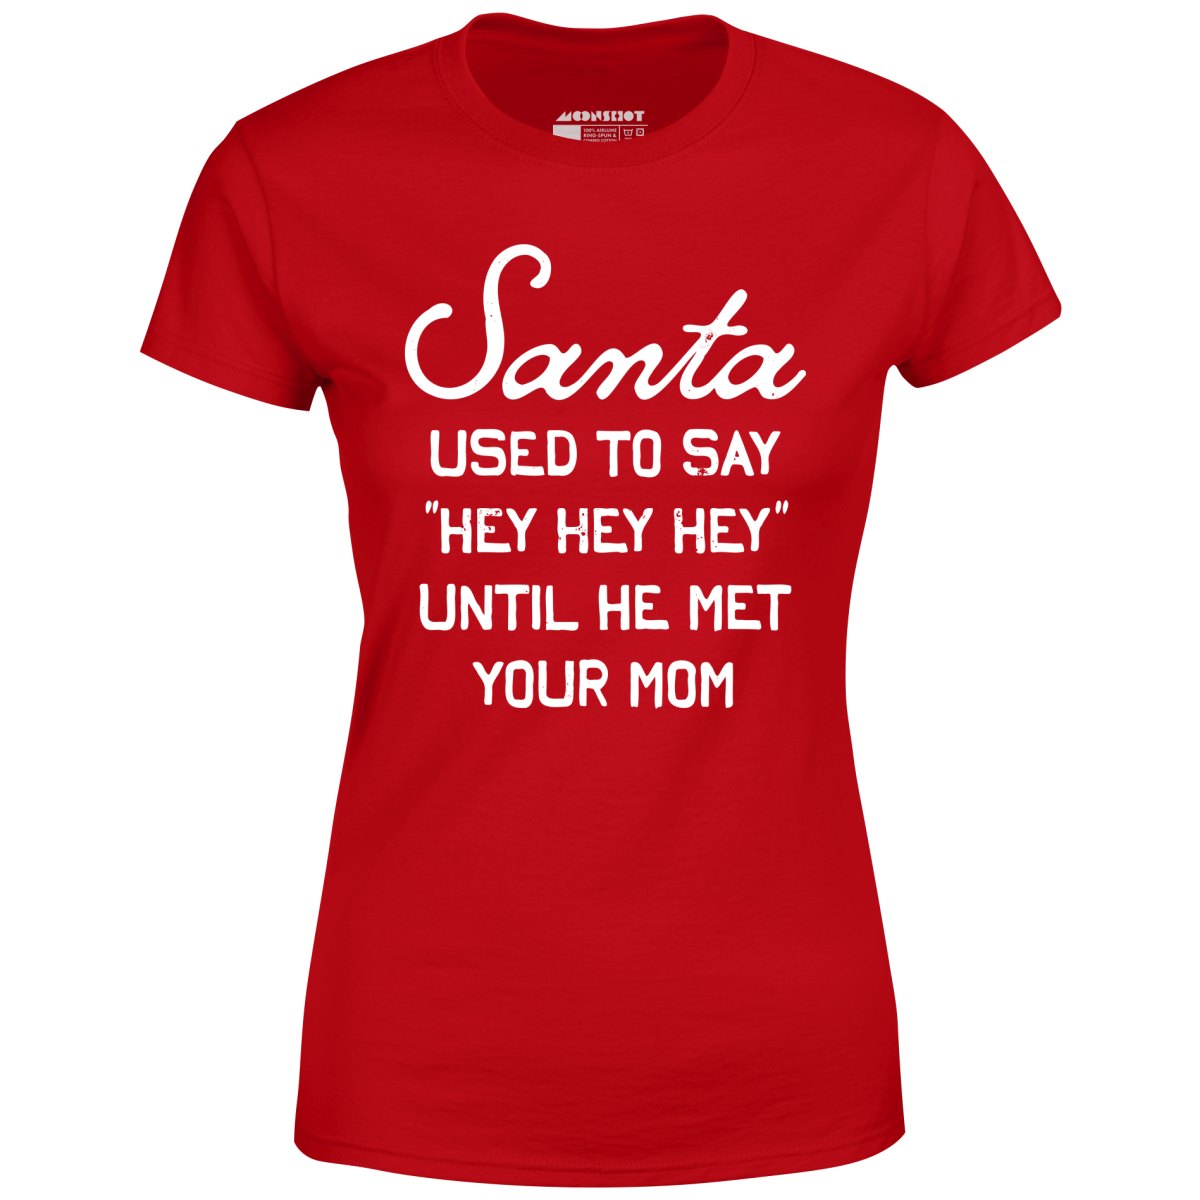 Santa Used to Say Hey Hey Hey - Women's T-Shirt